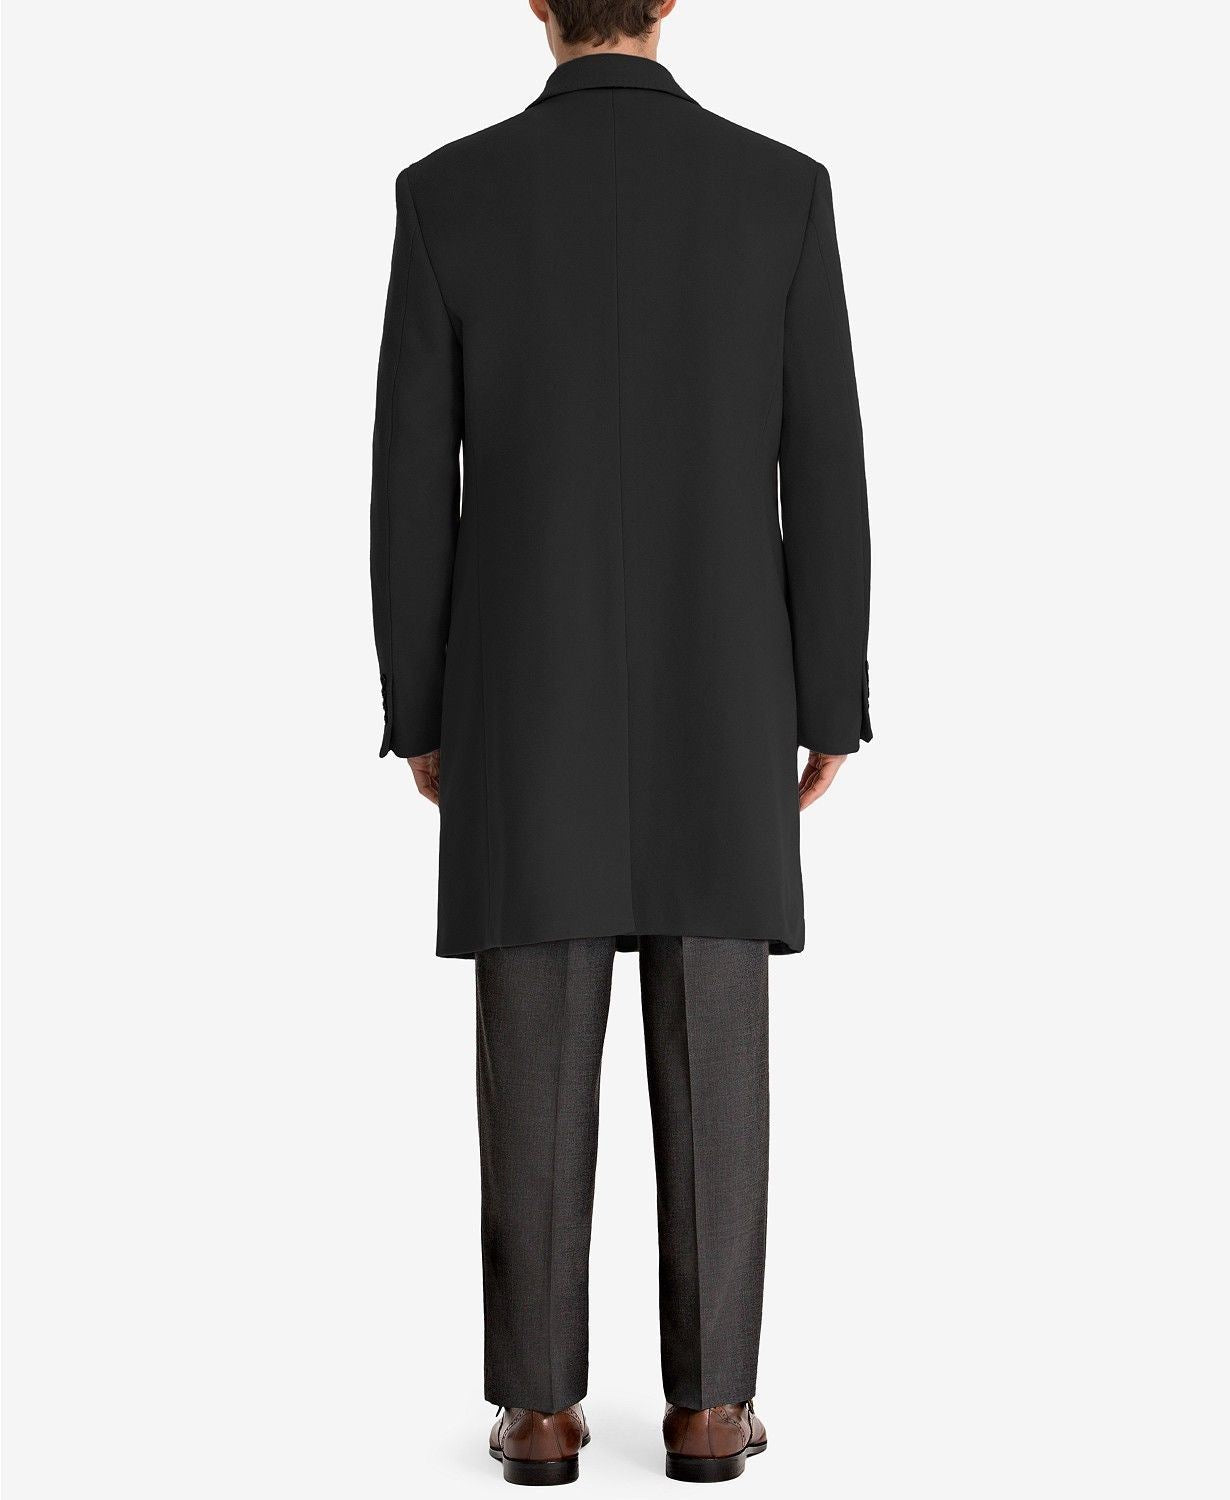 Lauren Ralph Lauren Men's Luther Wool-Blend Top Coat 40R Black Overcoat